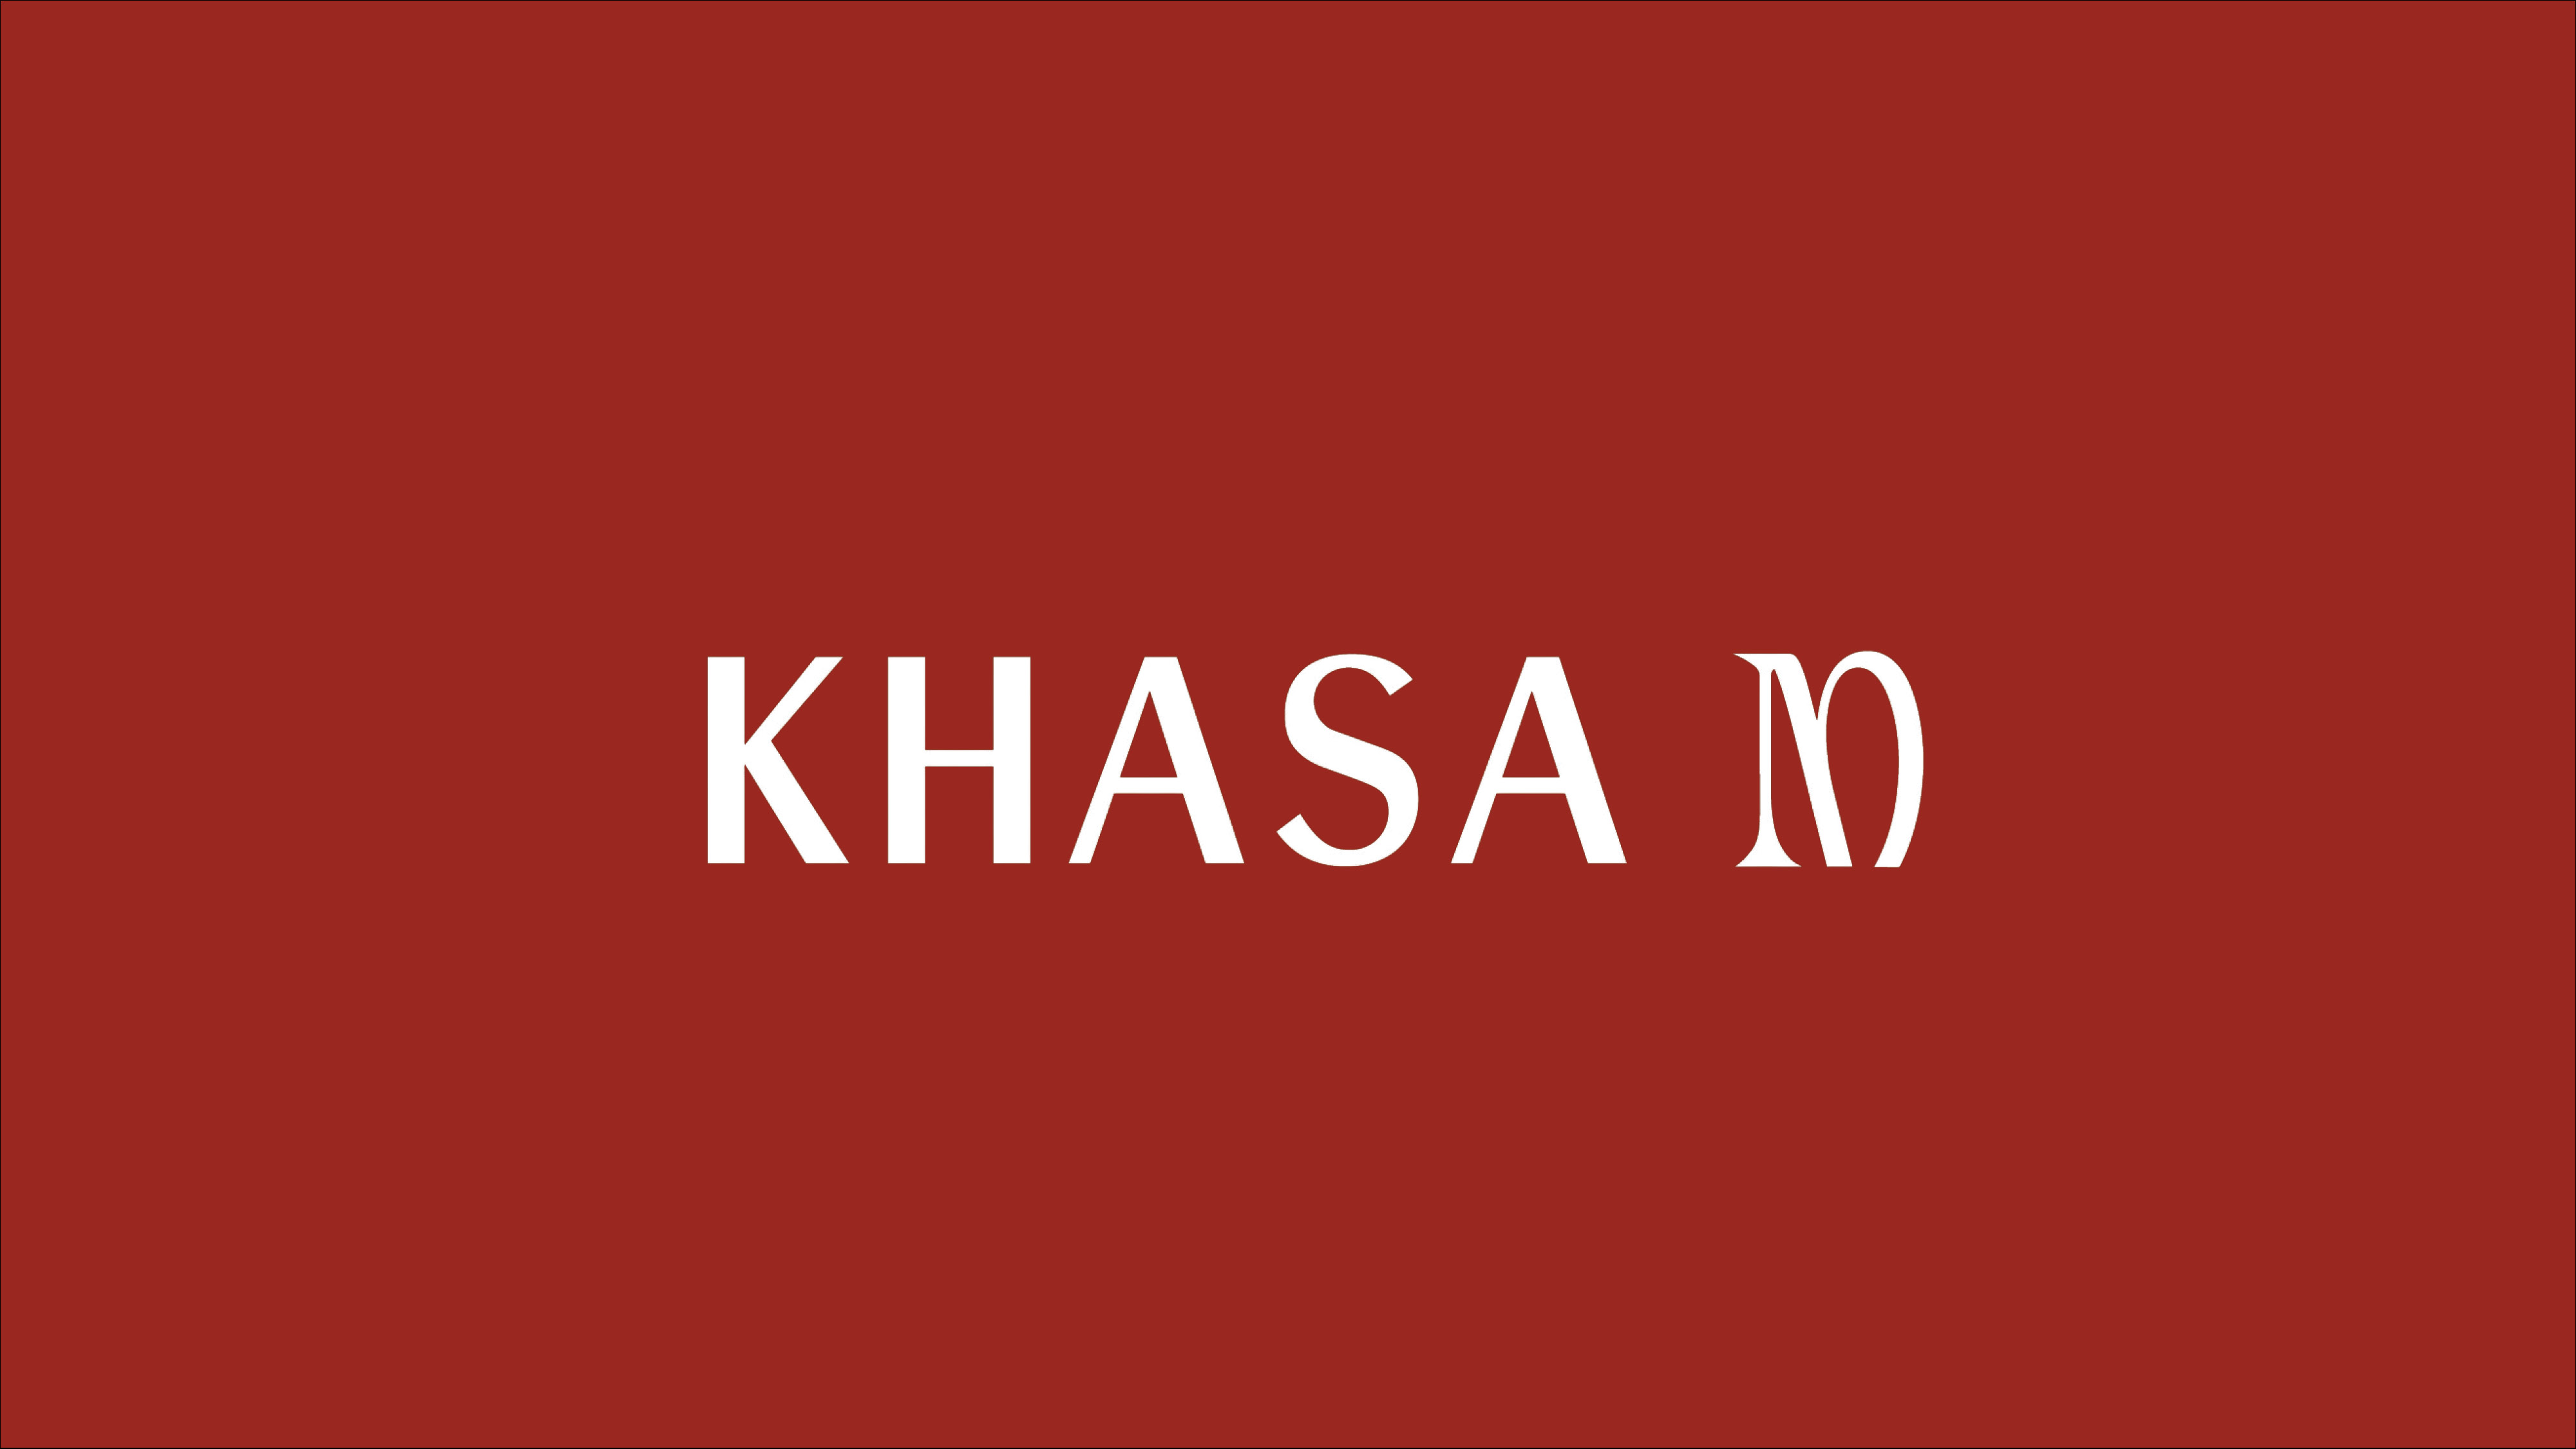 Khasa M Fashion Brand Design